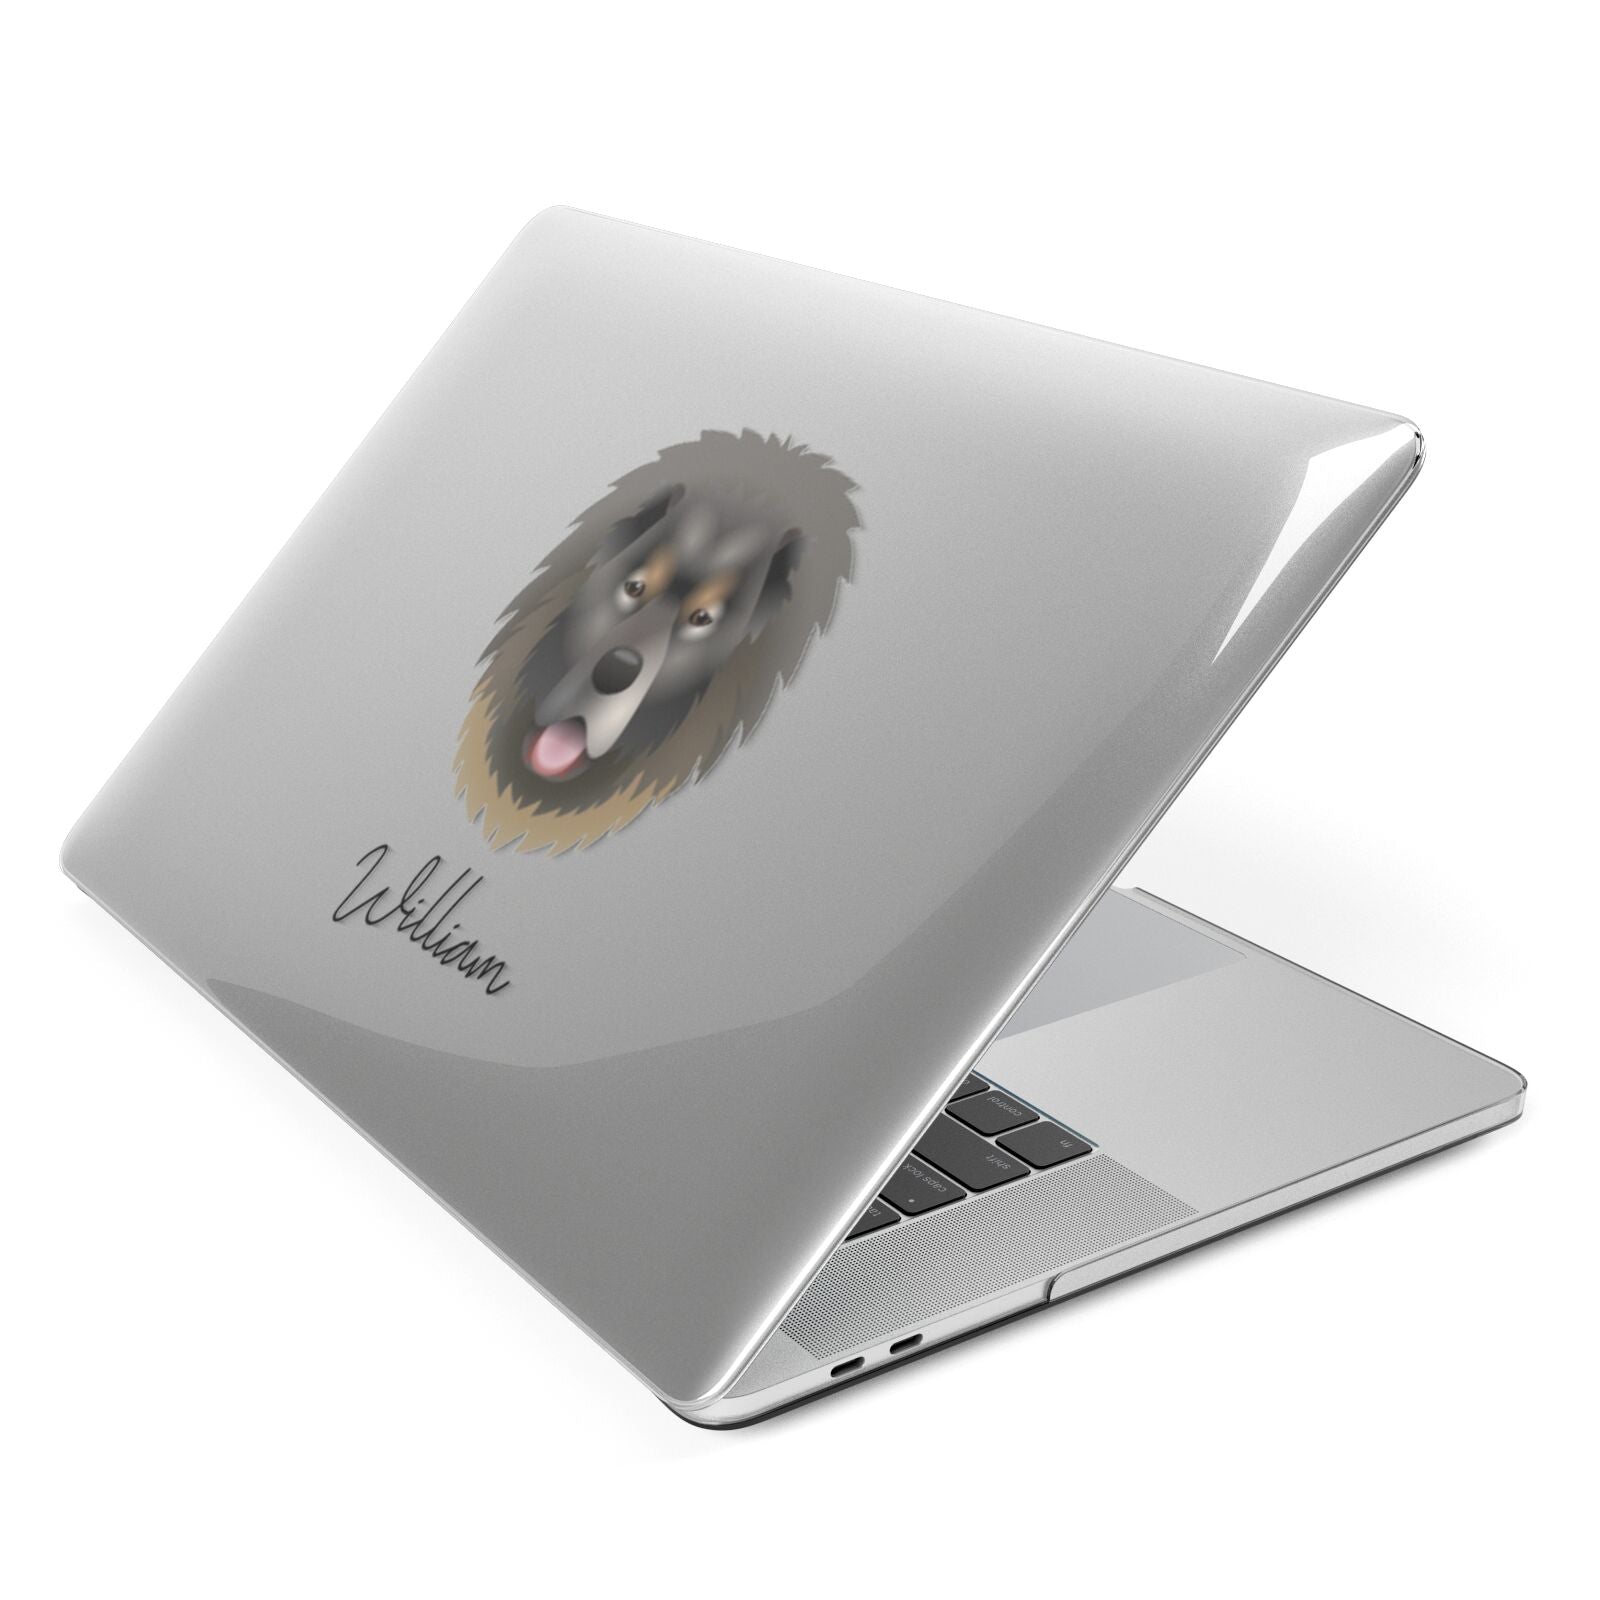 Causasian Shepherd Personalised Apple MacBook Case Side View